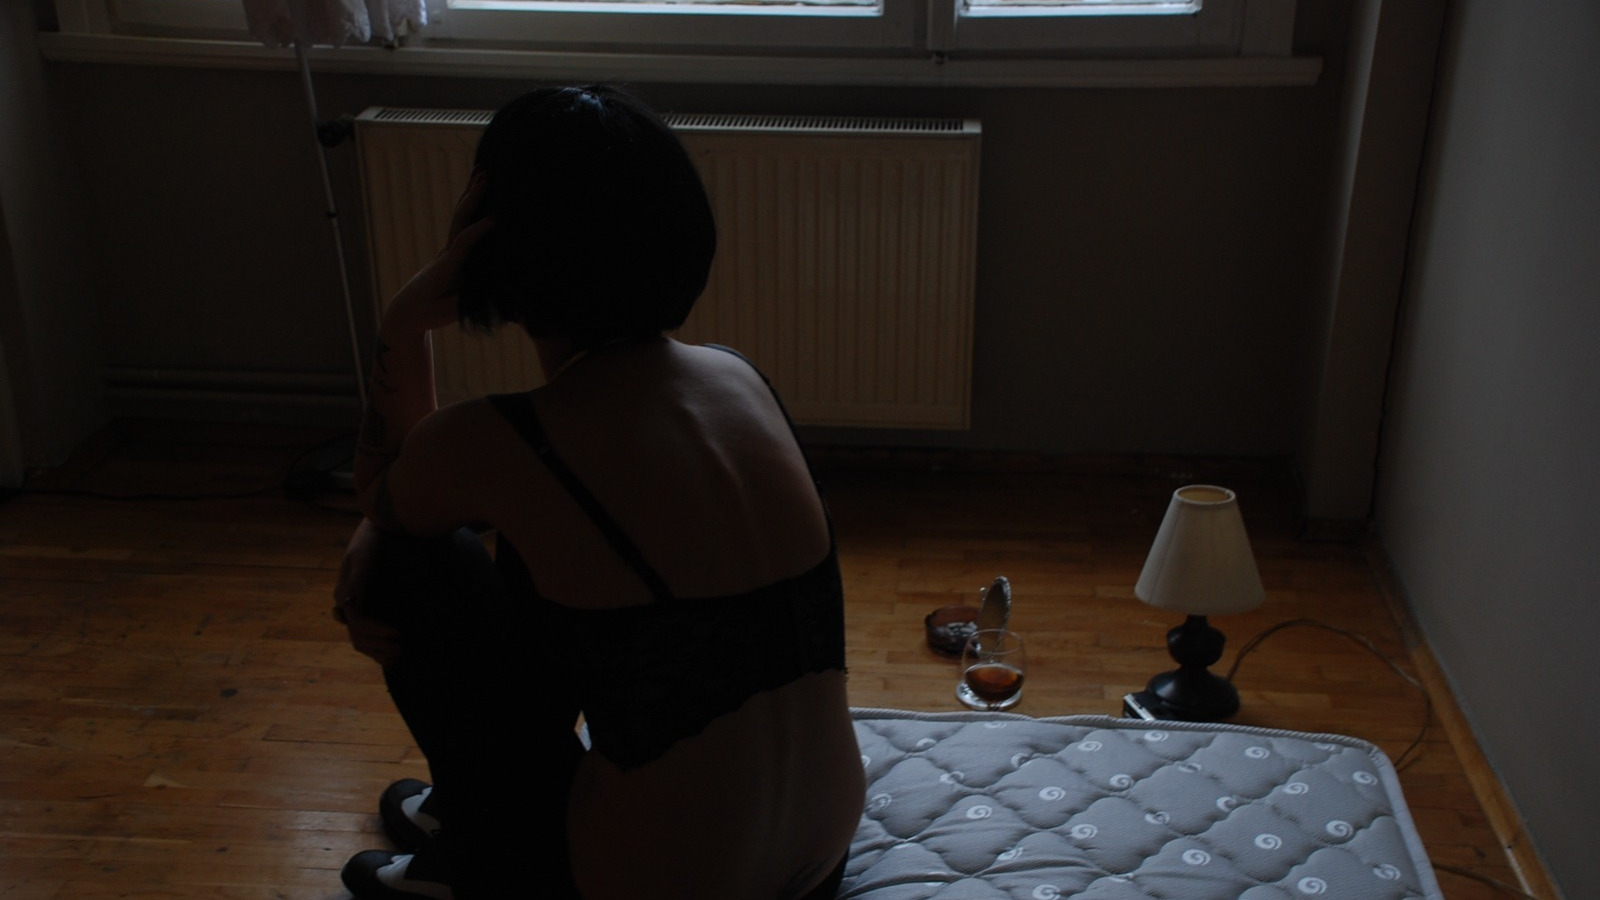 Das Foto von Nazife Behramoğlu (Istanbul 2011) zeigt eine Frau, die in einen schwarzen BH und eine schwarze Hose gekleidet auf einer Matratze sitzt, die auf dem Boden liegt. Die Frau hat kinnlange, schwarze Haare, sie sitzt mit dem Rücken zu uns. Neben ihr auf dem Boden stehen ein Glas , ein kleiner Spiegel, ein Aschenbecher und eine kleine Lampe.